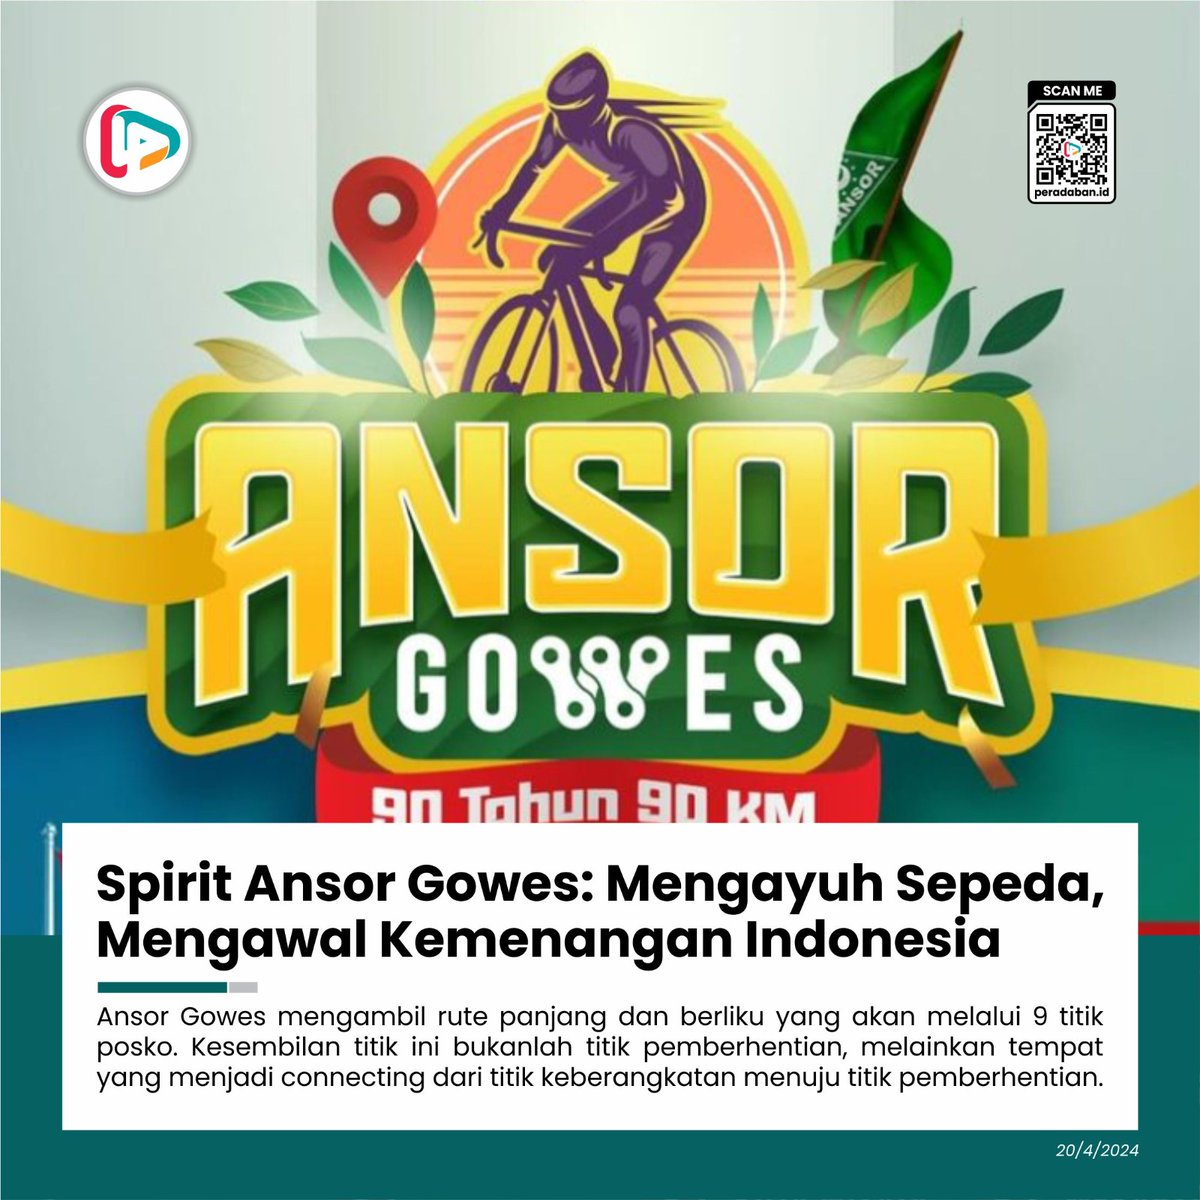 mengayuh sepeda #Ansor90wes mengambil rute panjang dan melalui 9 titik posko, mengayuh sepeda menandakan mengayuh Indonesia Emas 2045 dengan barisan generasi yang teratur, satu komando, disiplin tinggi, fisik sehat dan loyalitas tak terbatas. viva.co.id/berita/nasiona…